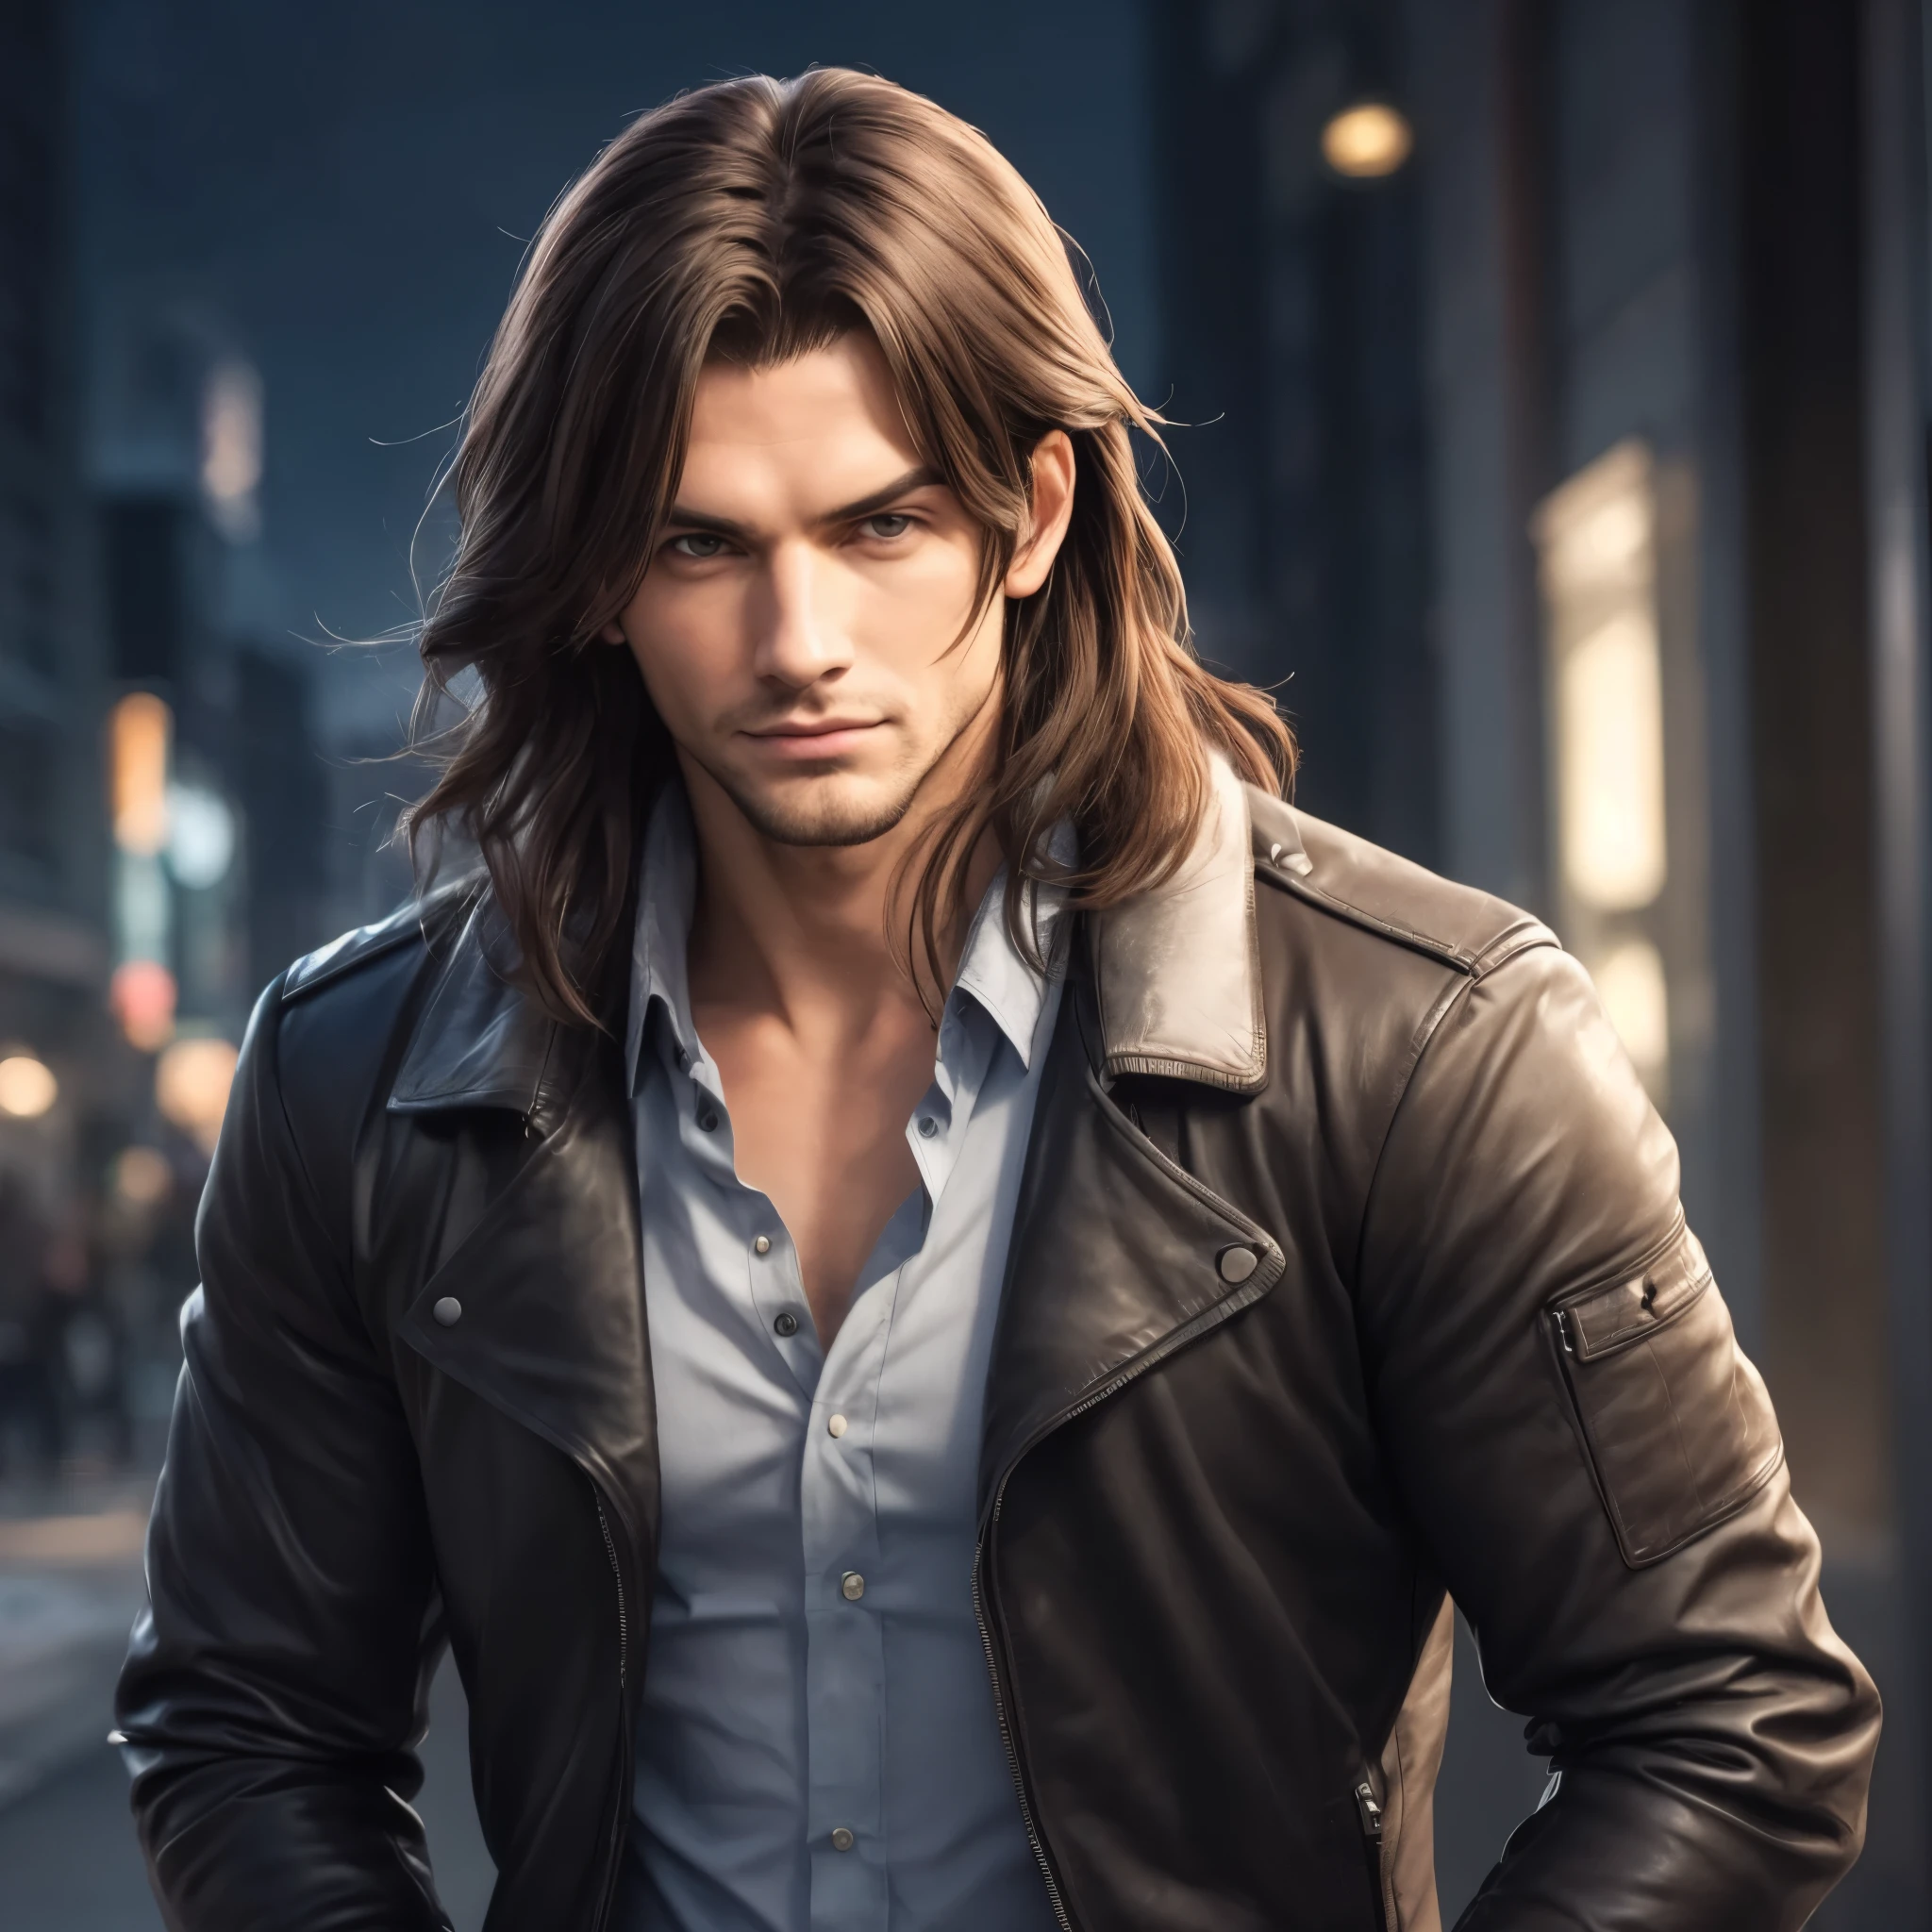 красивый мужчина с длинными волосами и кожаной курткой, стоящий в городе